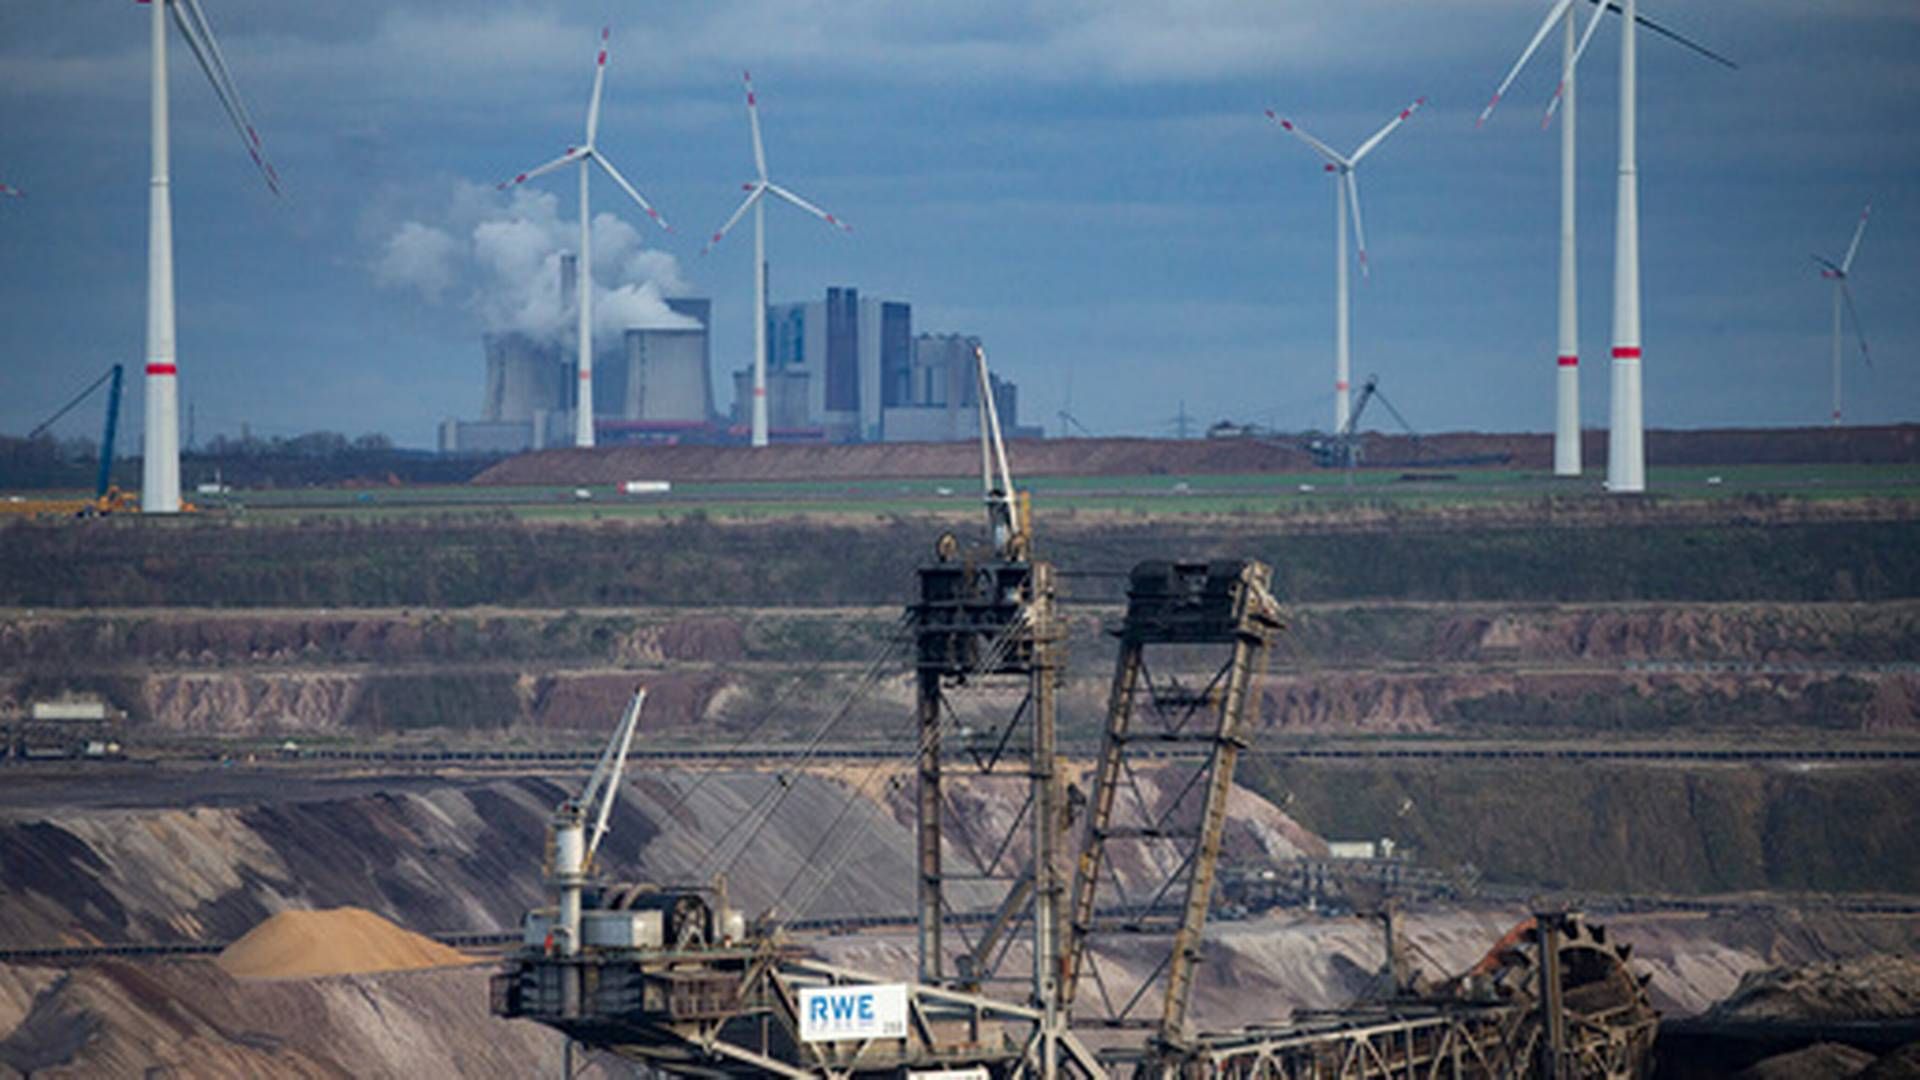 MOT UTFASING: Kullgruver som den i Lützerath kan fases ut i sin helhet i Tyskland allerede i 2030, ifølge en ny rapport. | Foto: Thomas Banneyer / dpa via AP / NTB